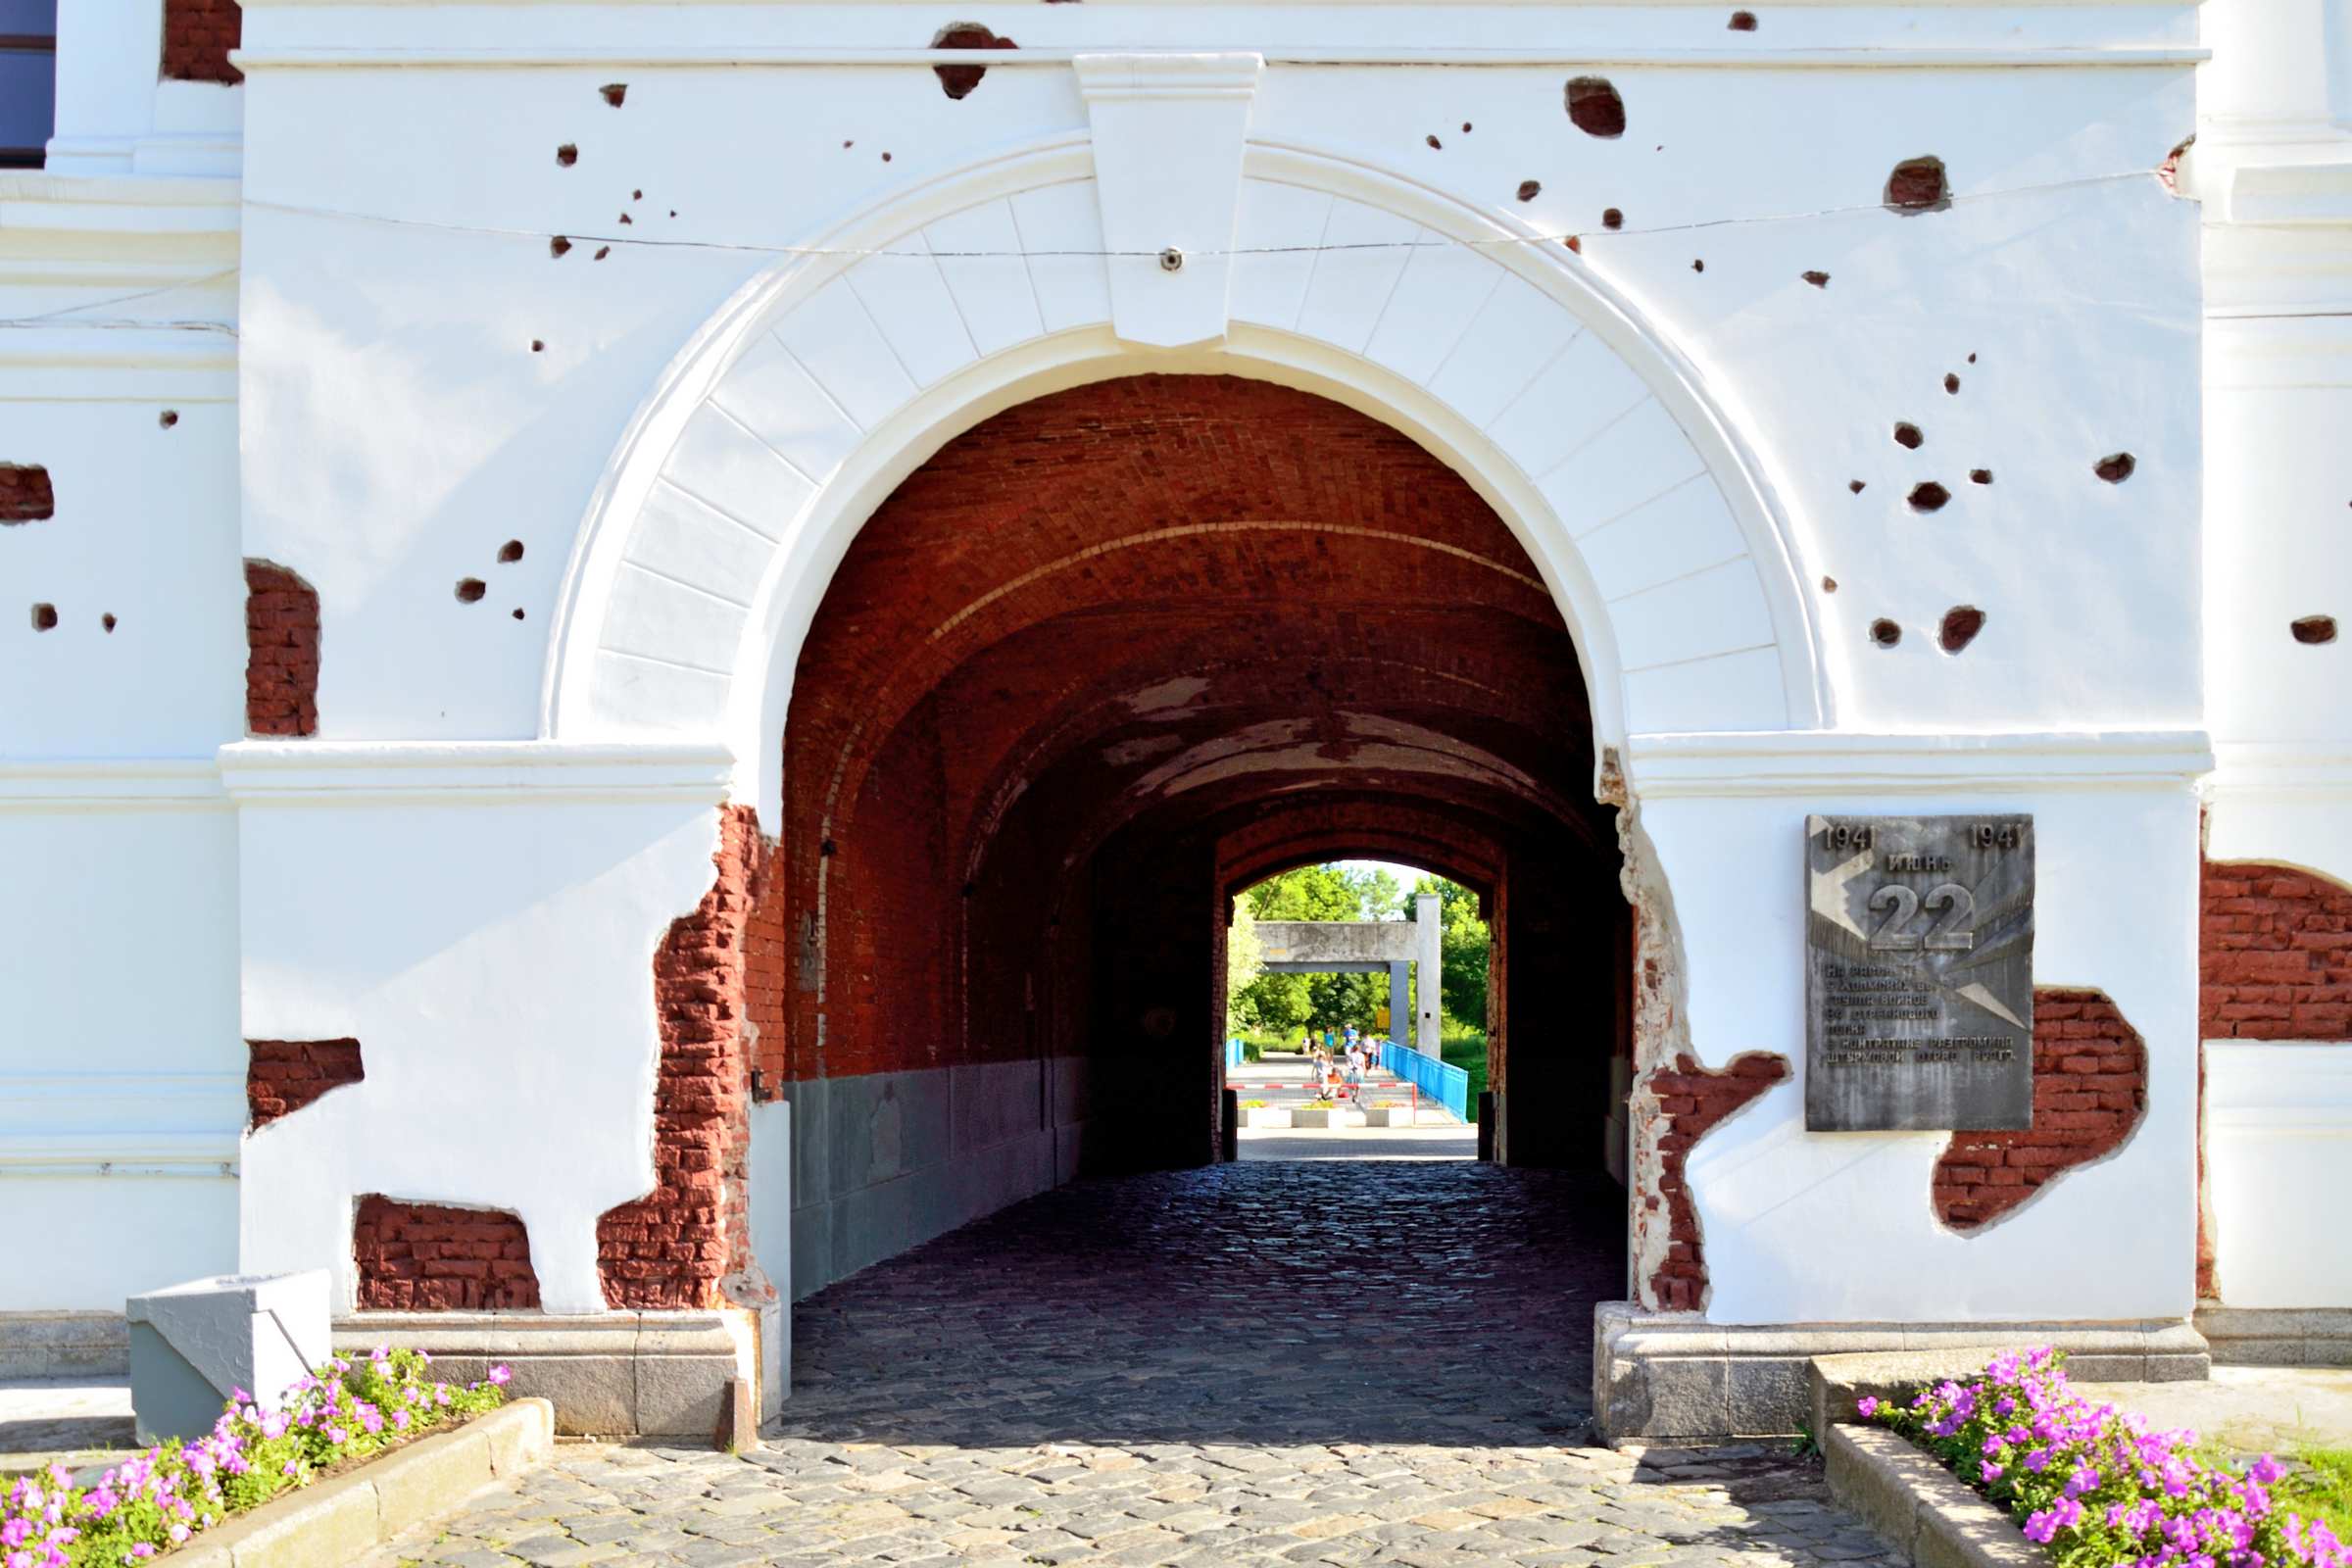 Брестская крепость. Холмские ворота